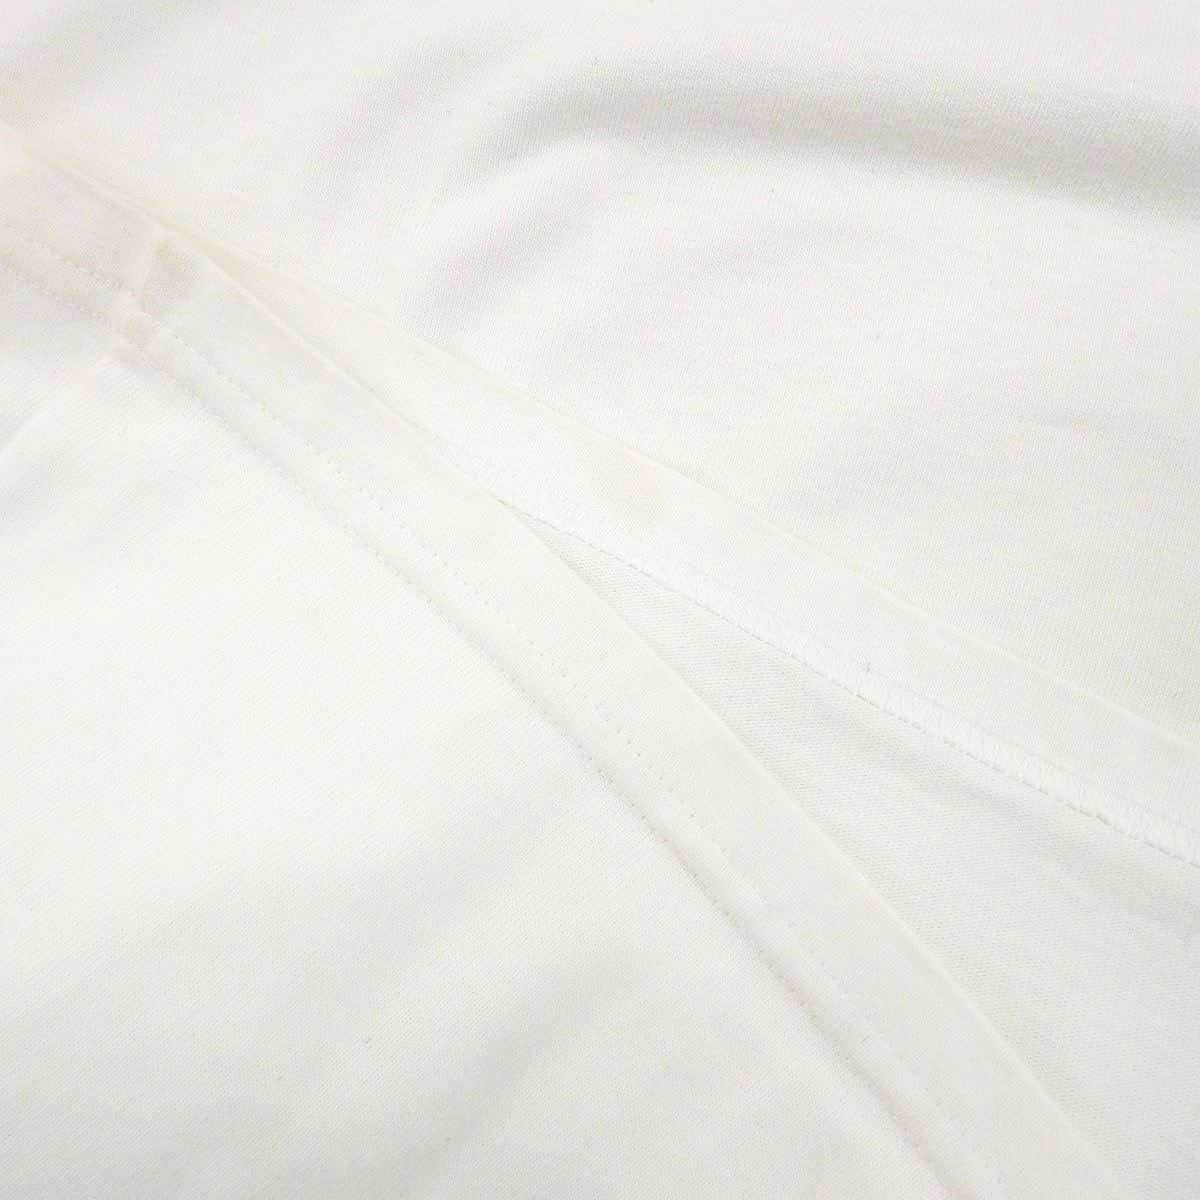 ディオール ケニー シャーフ コラボ ロゴ 刺繍 Tシャツ ディオールオム 193J646A0554 メンズ ホワイト Dior 中古 【アパレル・小物】_画像5